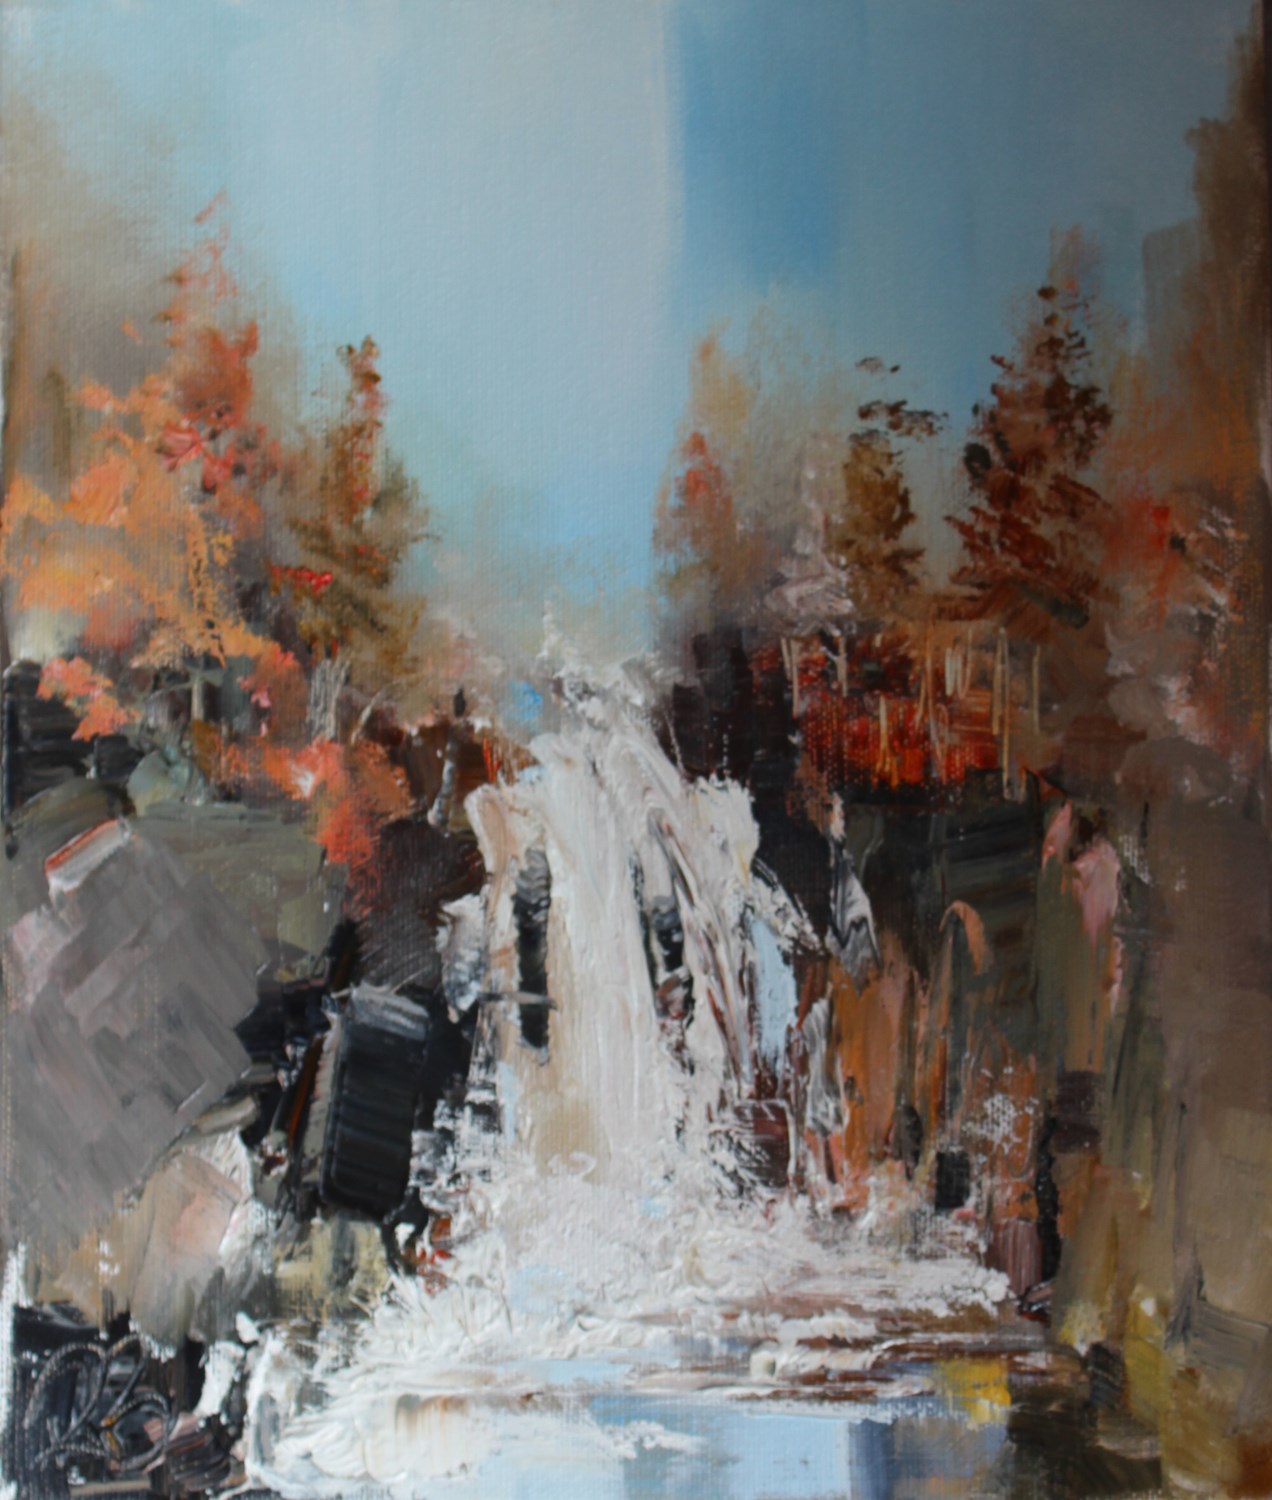 'Finding the hidden falls ' by artist Rosanne Barr